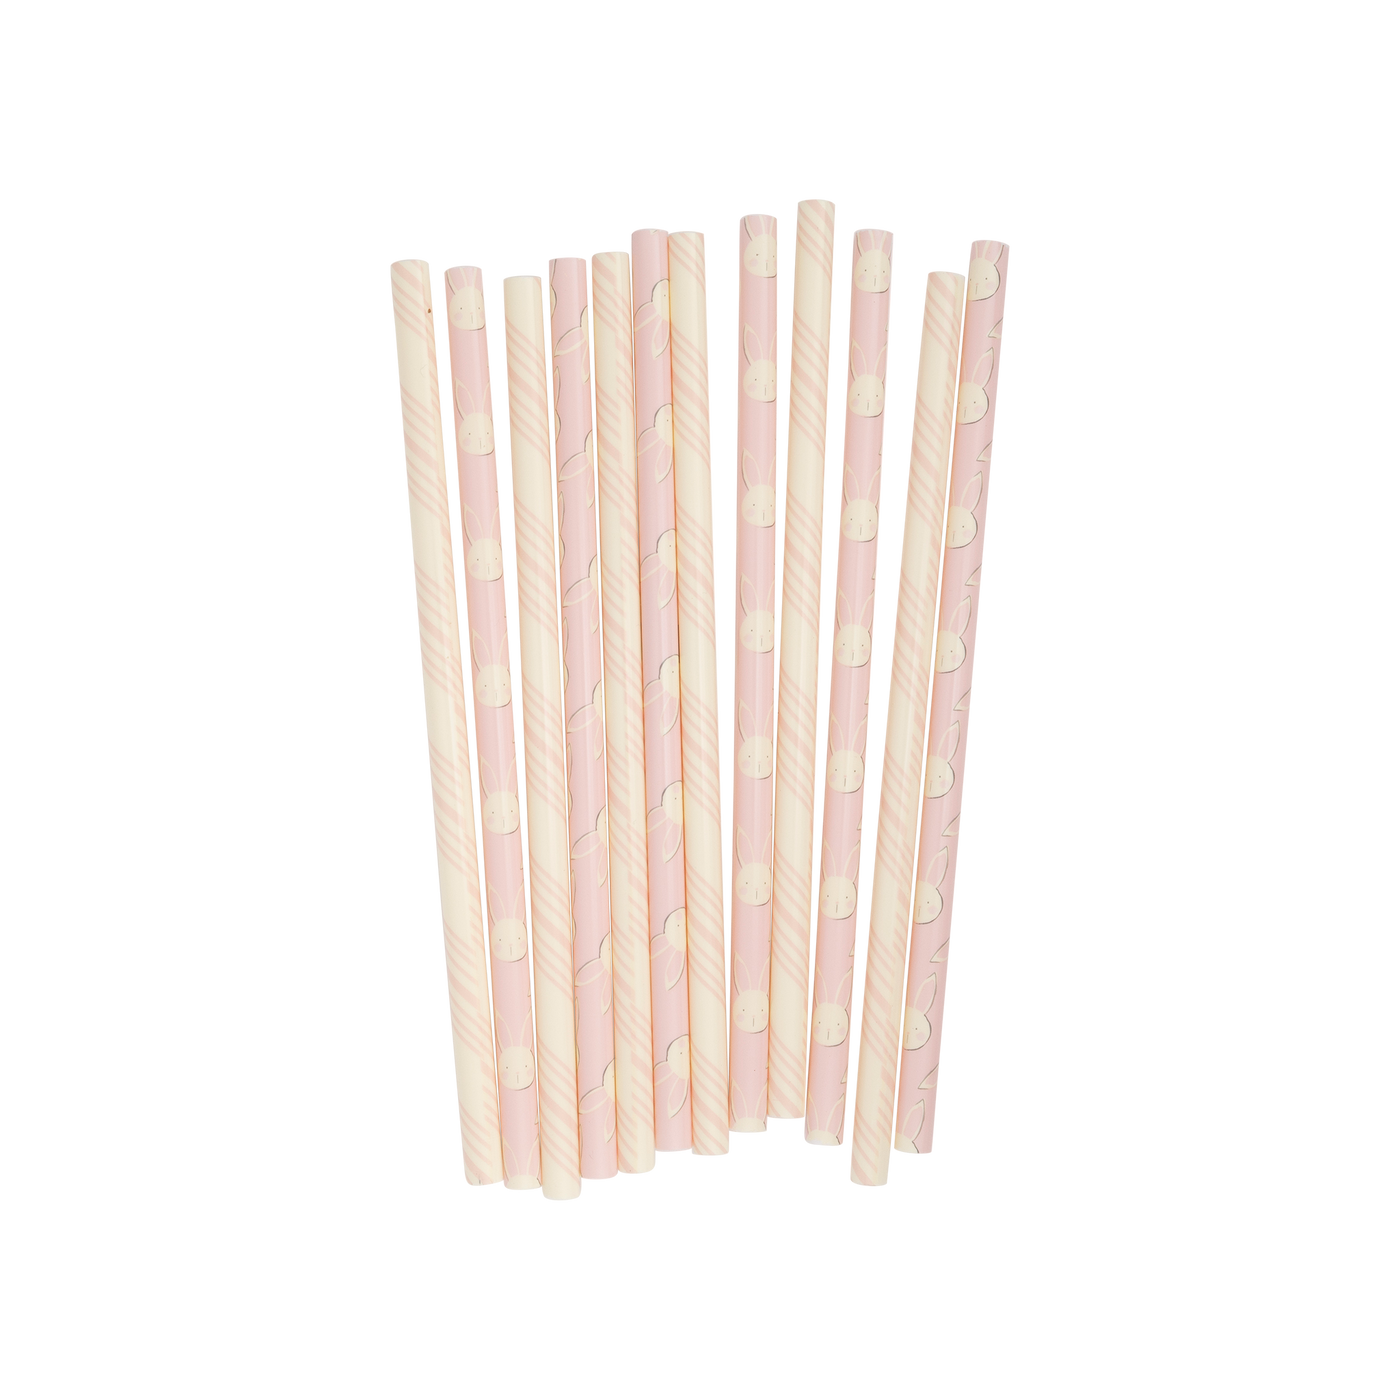 SBN1015 - Bunny Reusable Straws